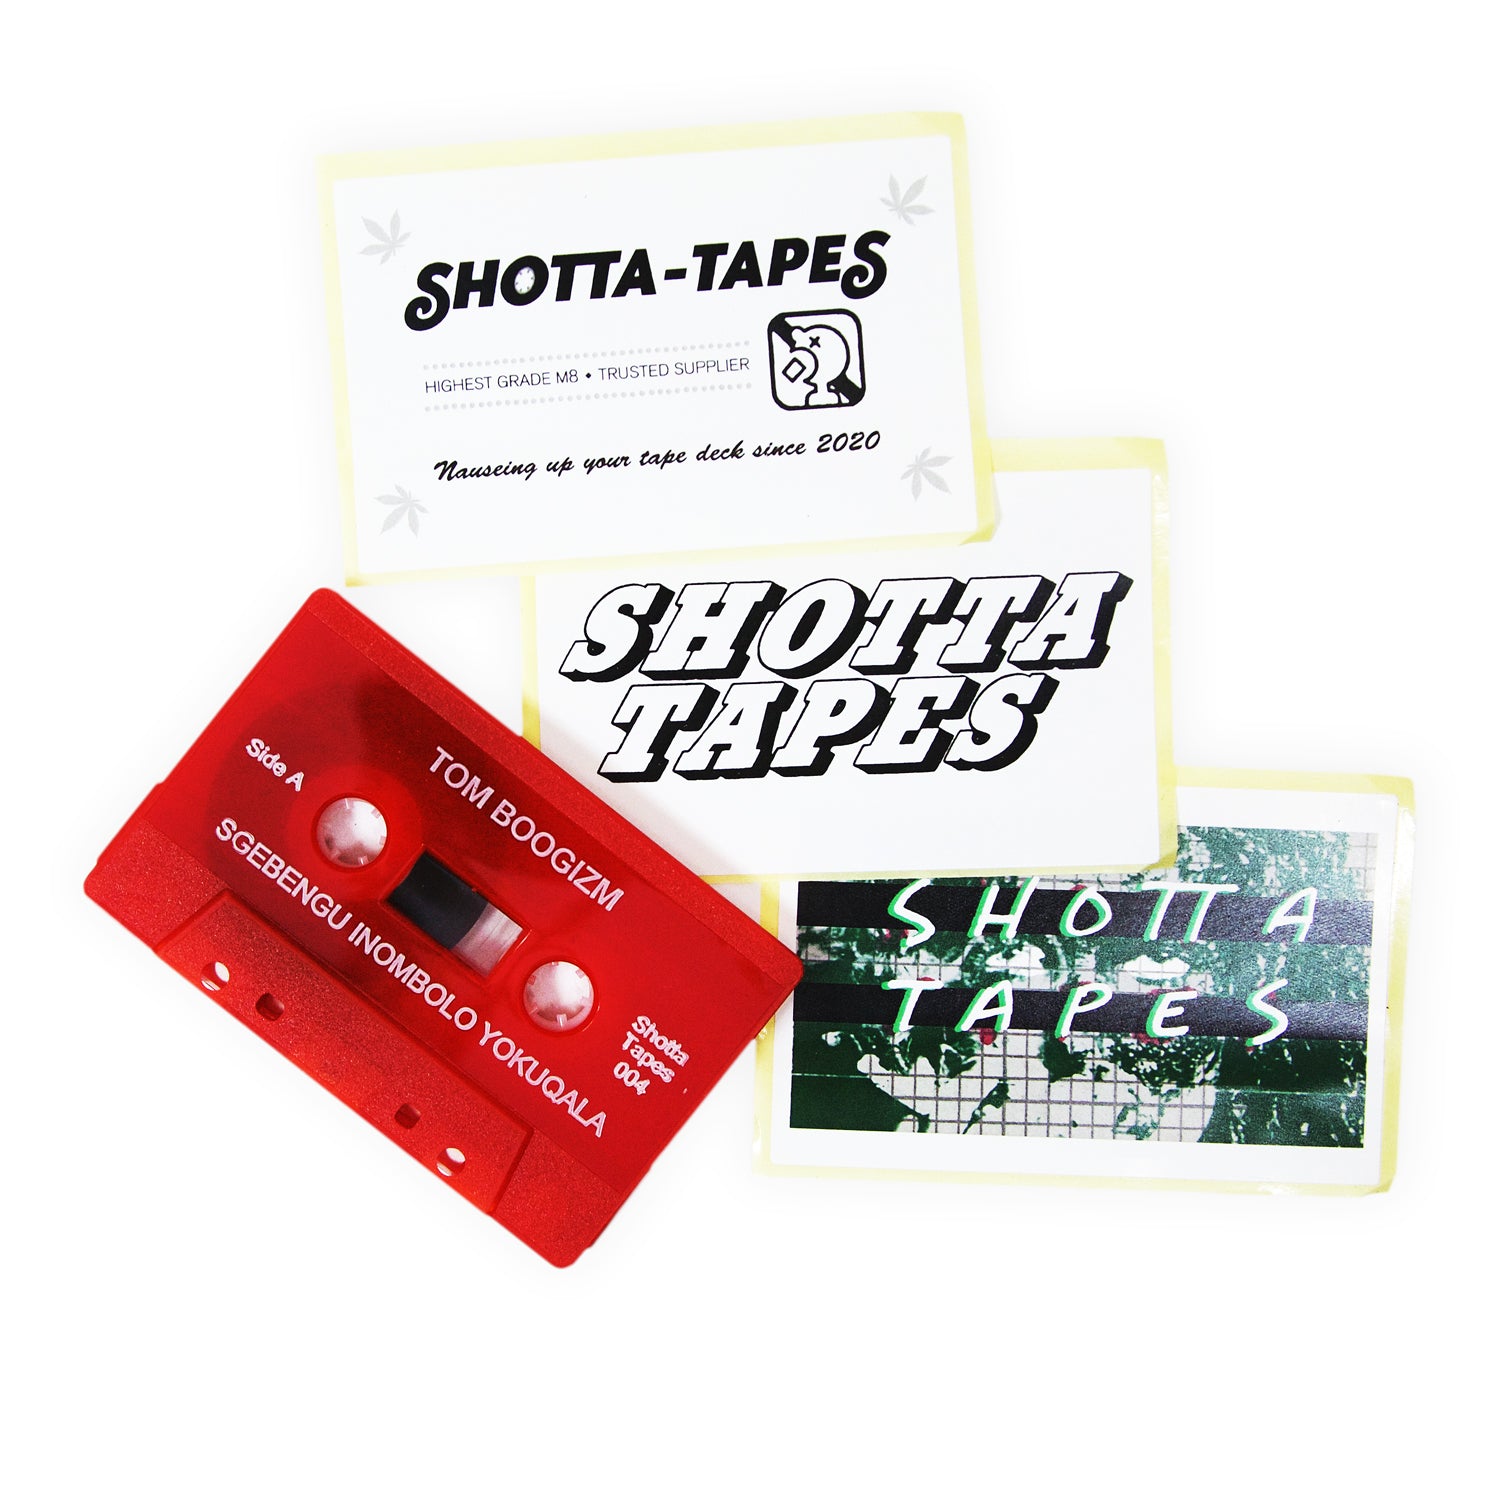 SHotta-tapes-004-detail-2